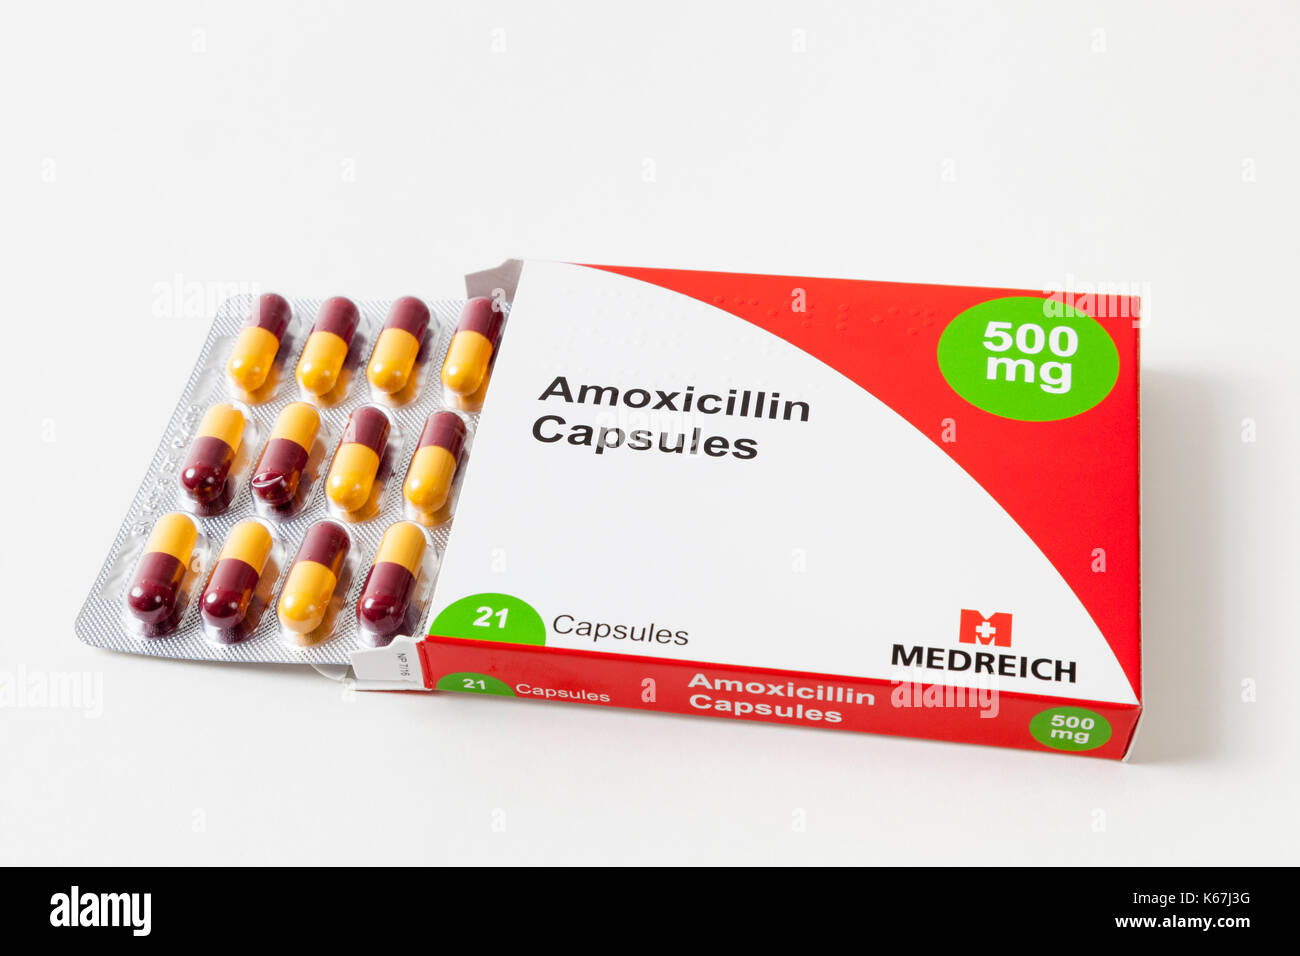 Amoxicillin 500mg capsules immagini e fotografie stock ad alta risoluzione  - Alamy